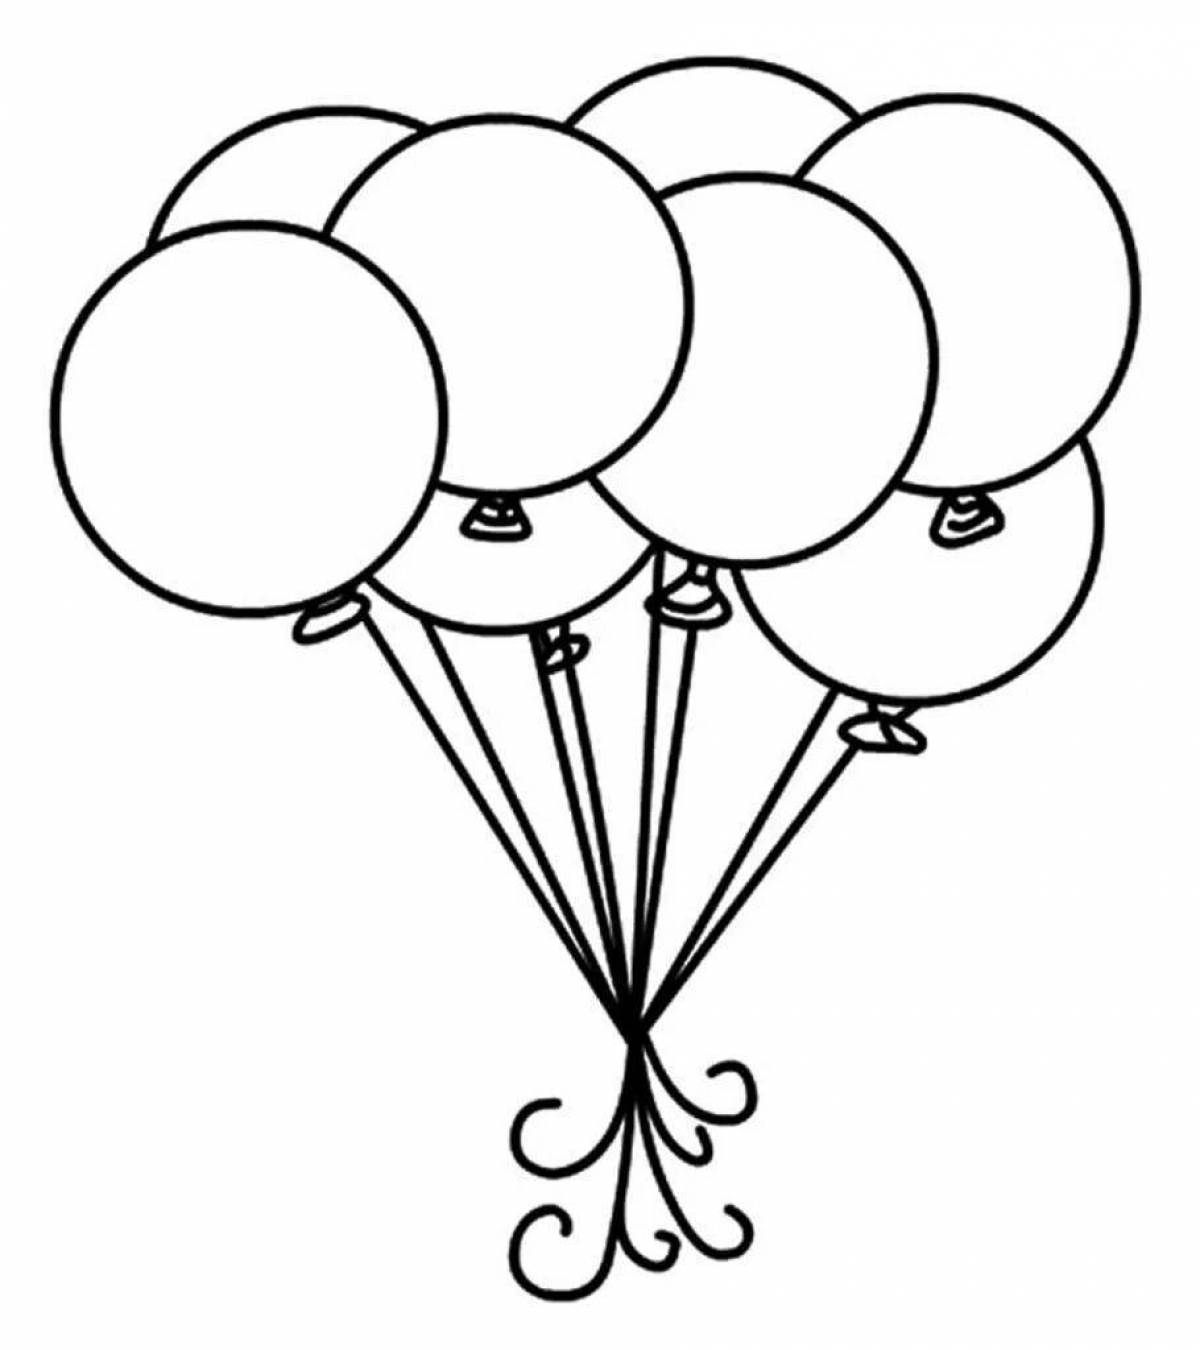 Удивительная страница раскраски с воздушными шарами для детей